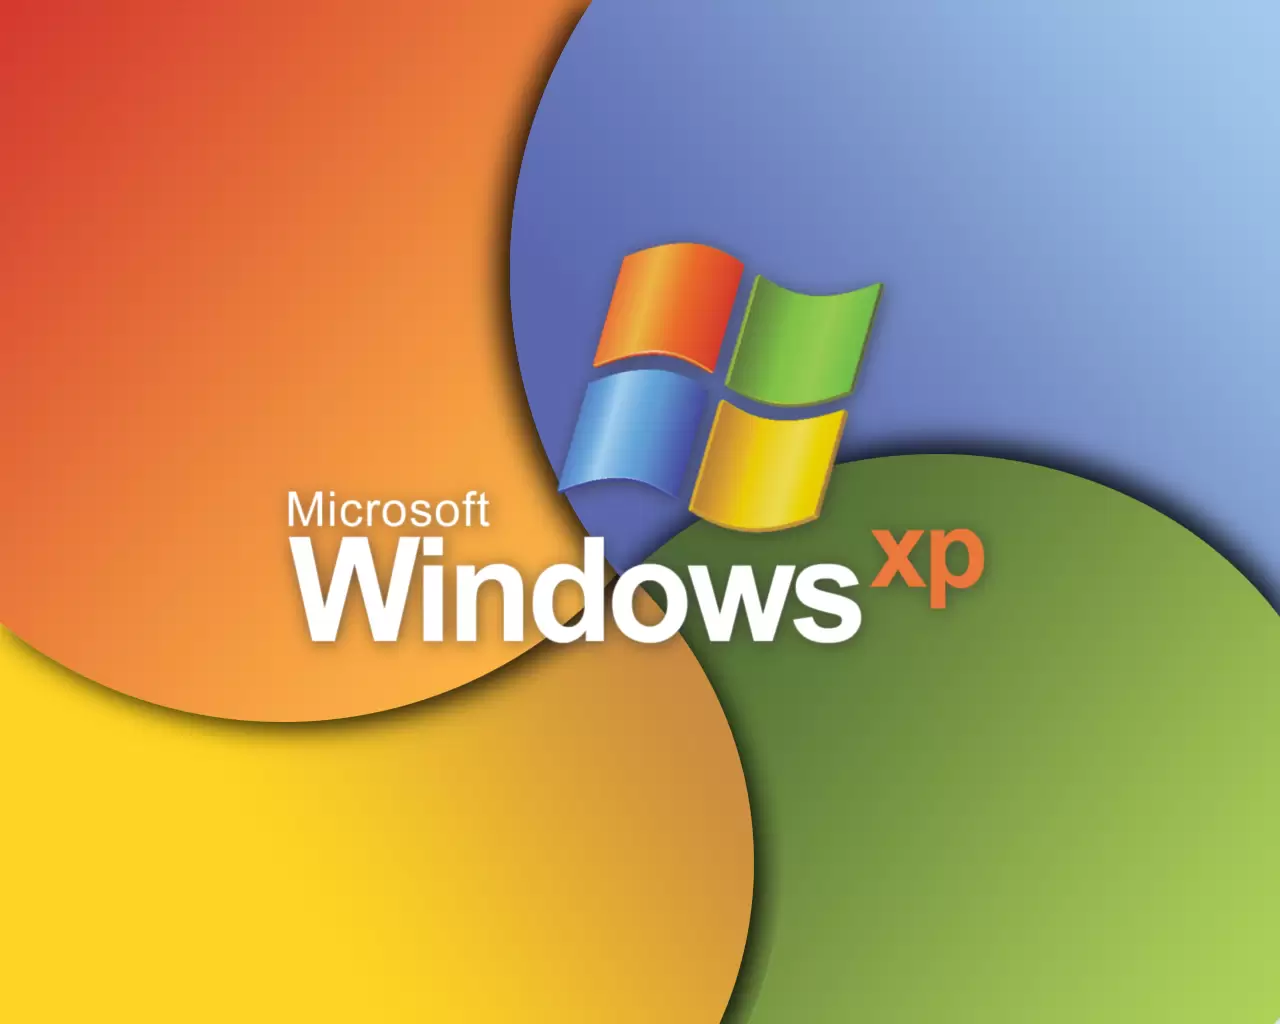 Windows XP help